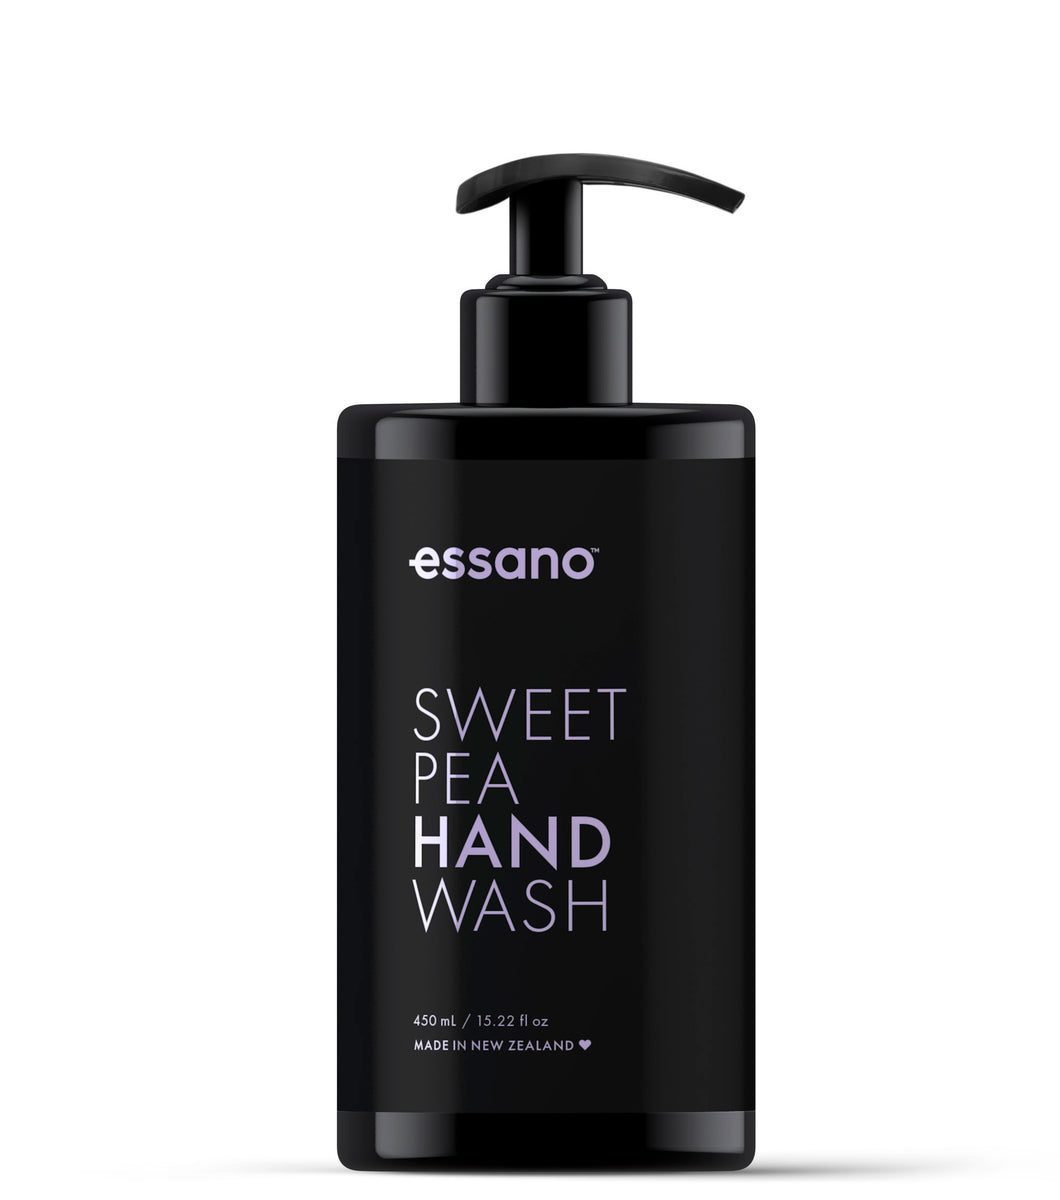 Sweet Pea Hand Wash